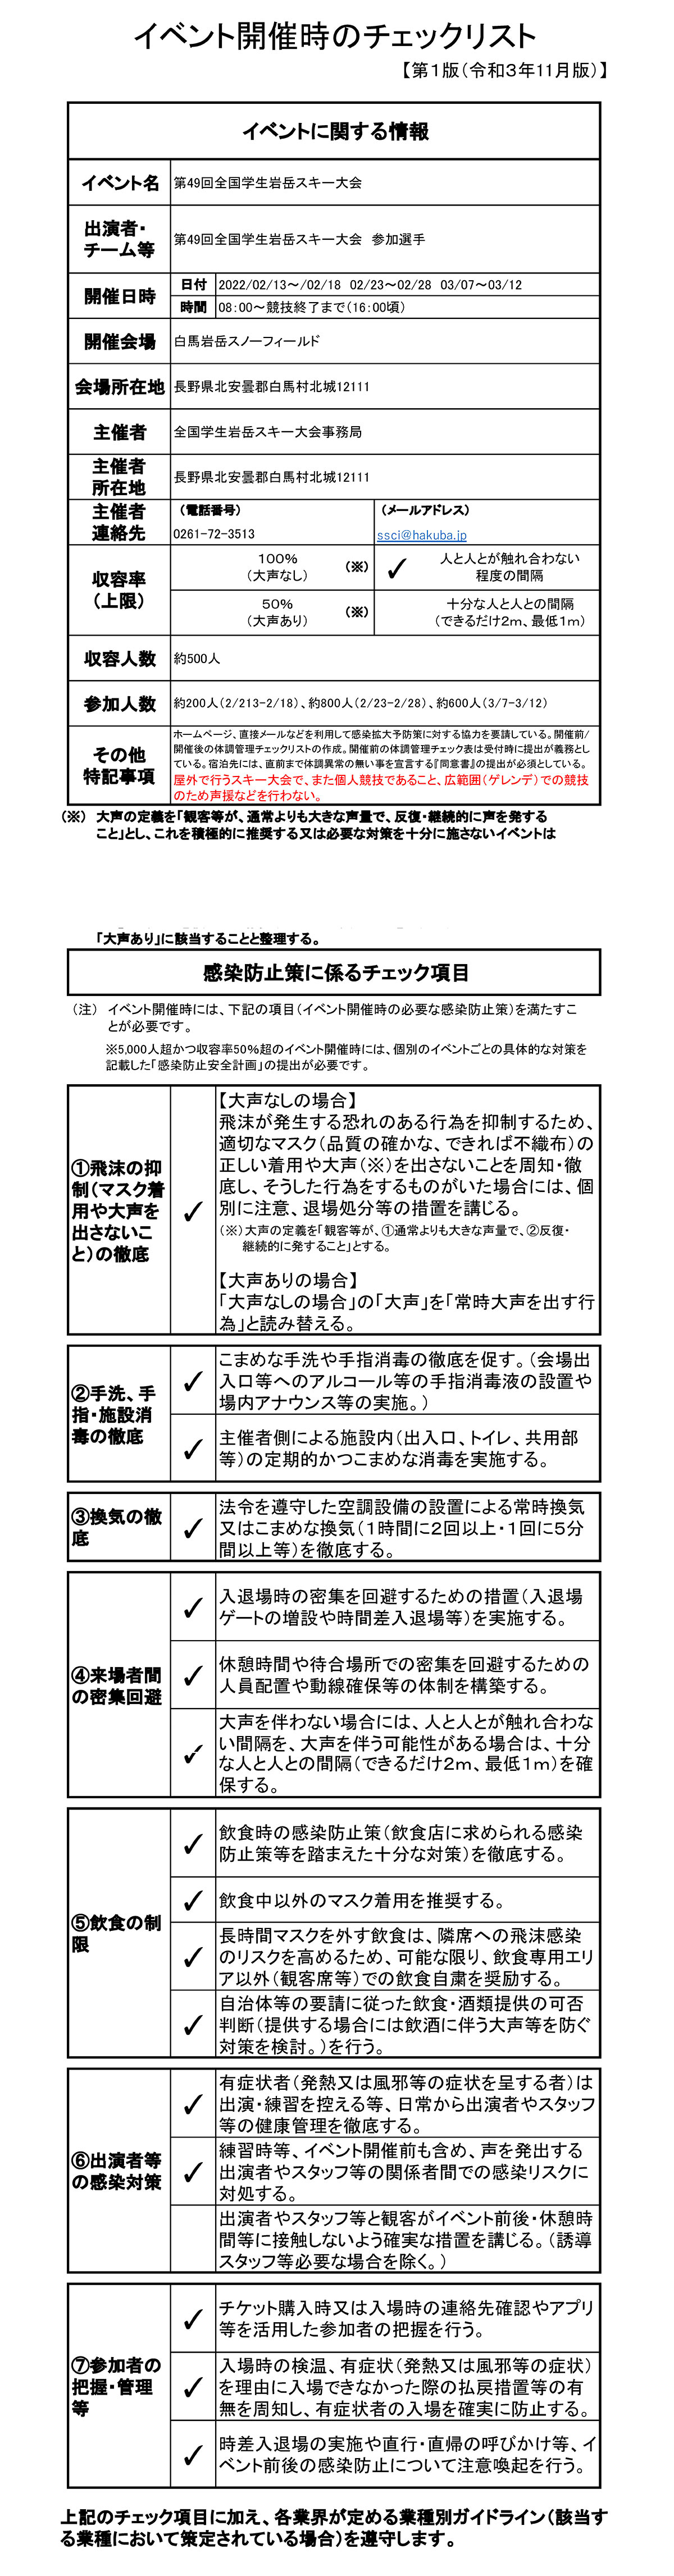 長野県新型コロナウイルス感染症対策室〜イベント開催チェックリスト（5000名以下のイベント）